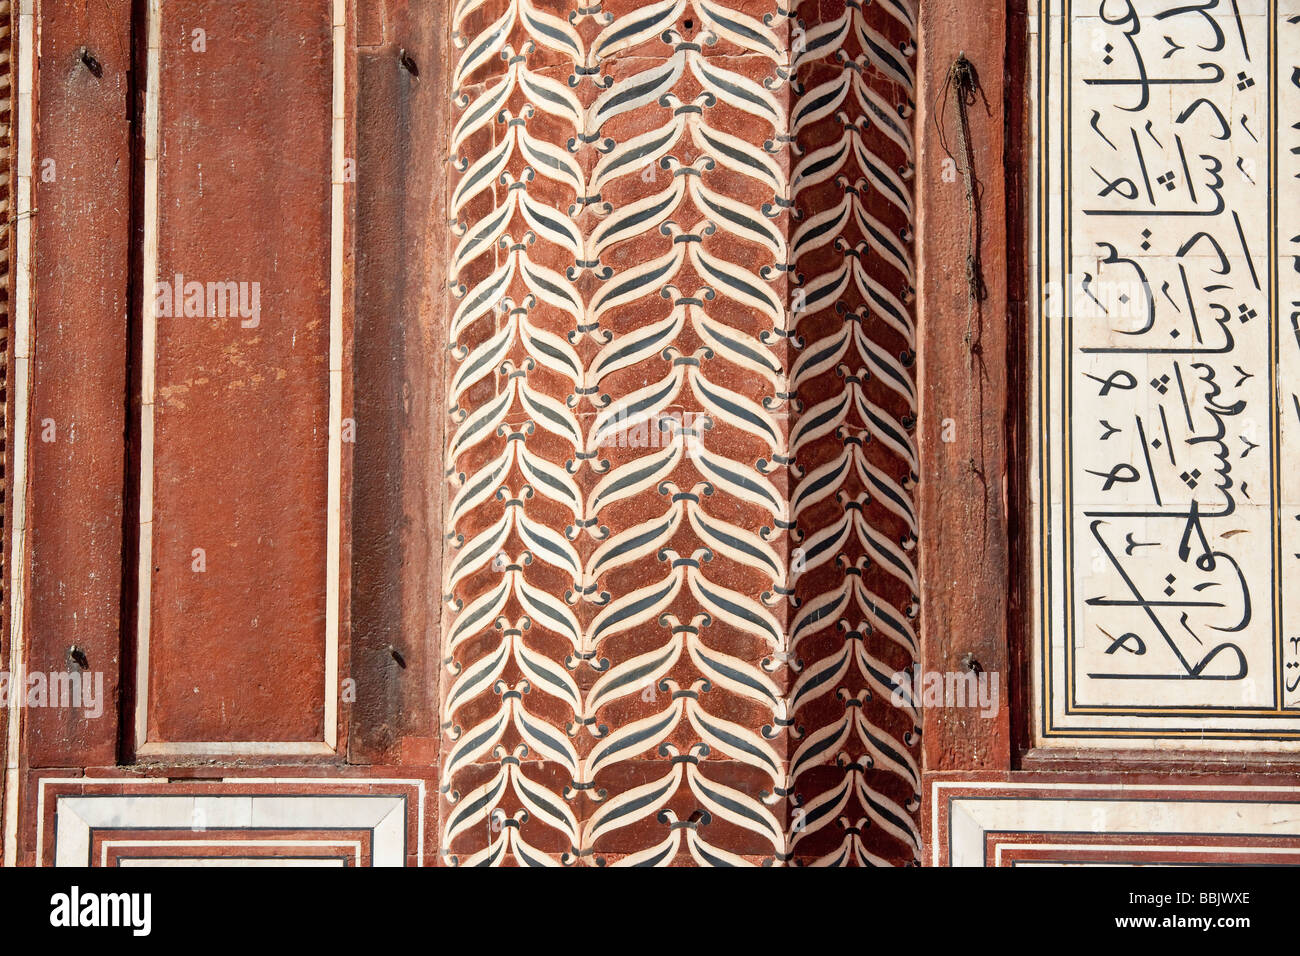 Arabische Inschrift auf der Jama Masjid in Agra Indien Stockfoto